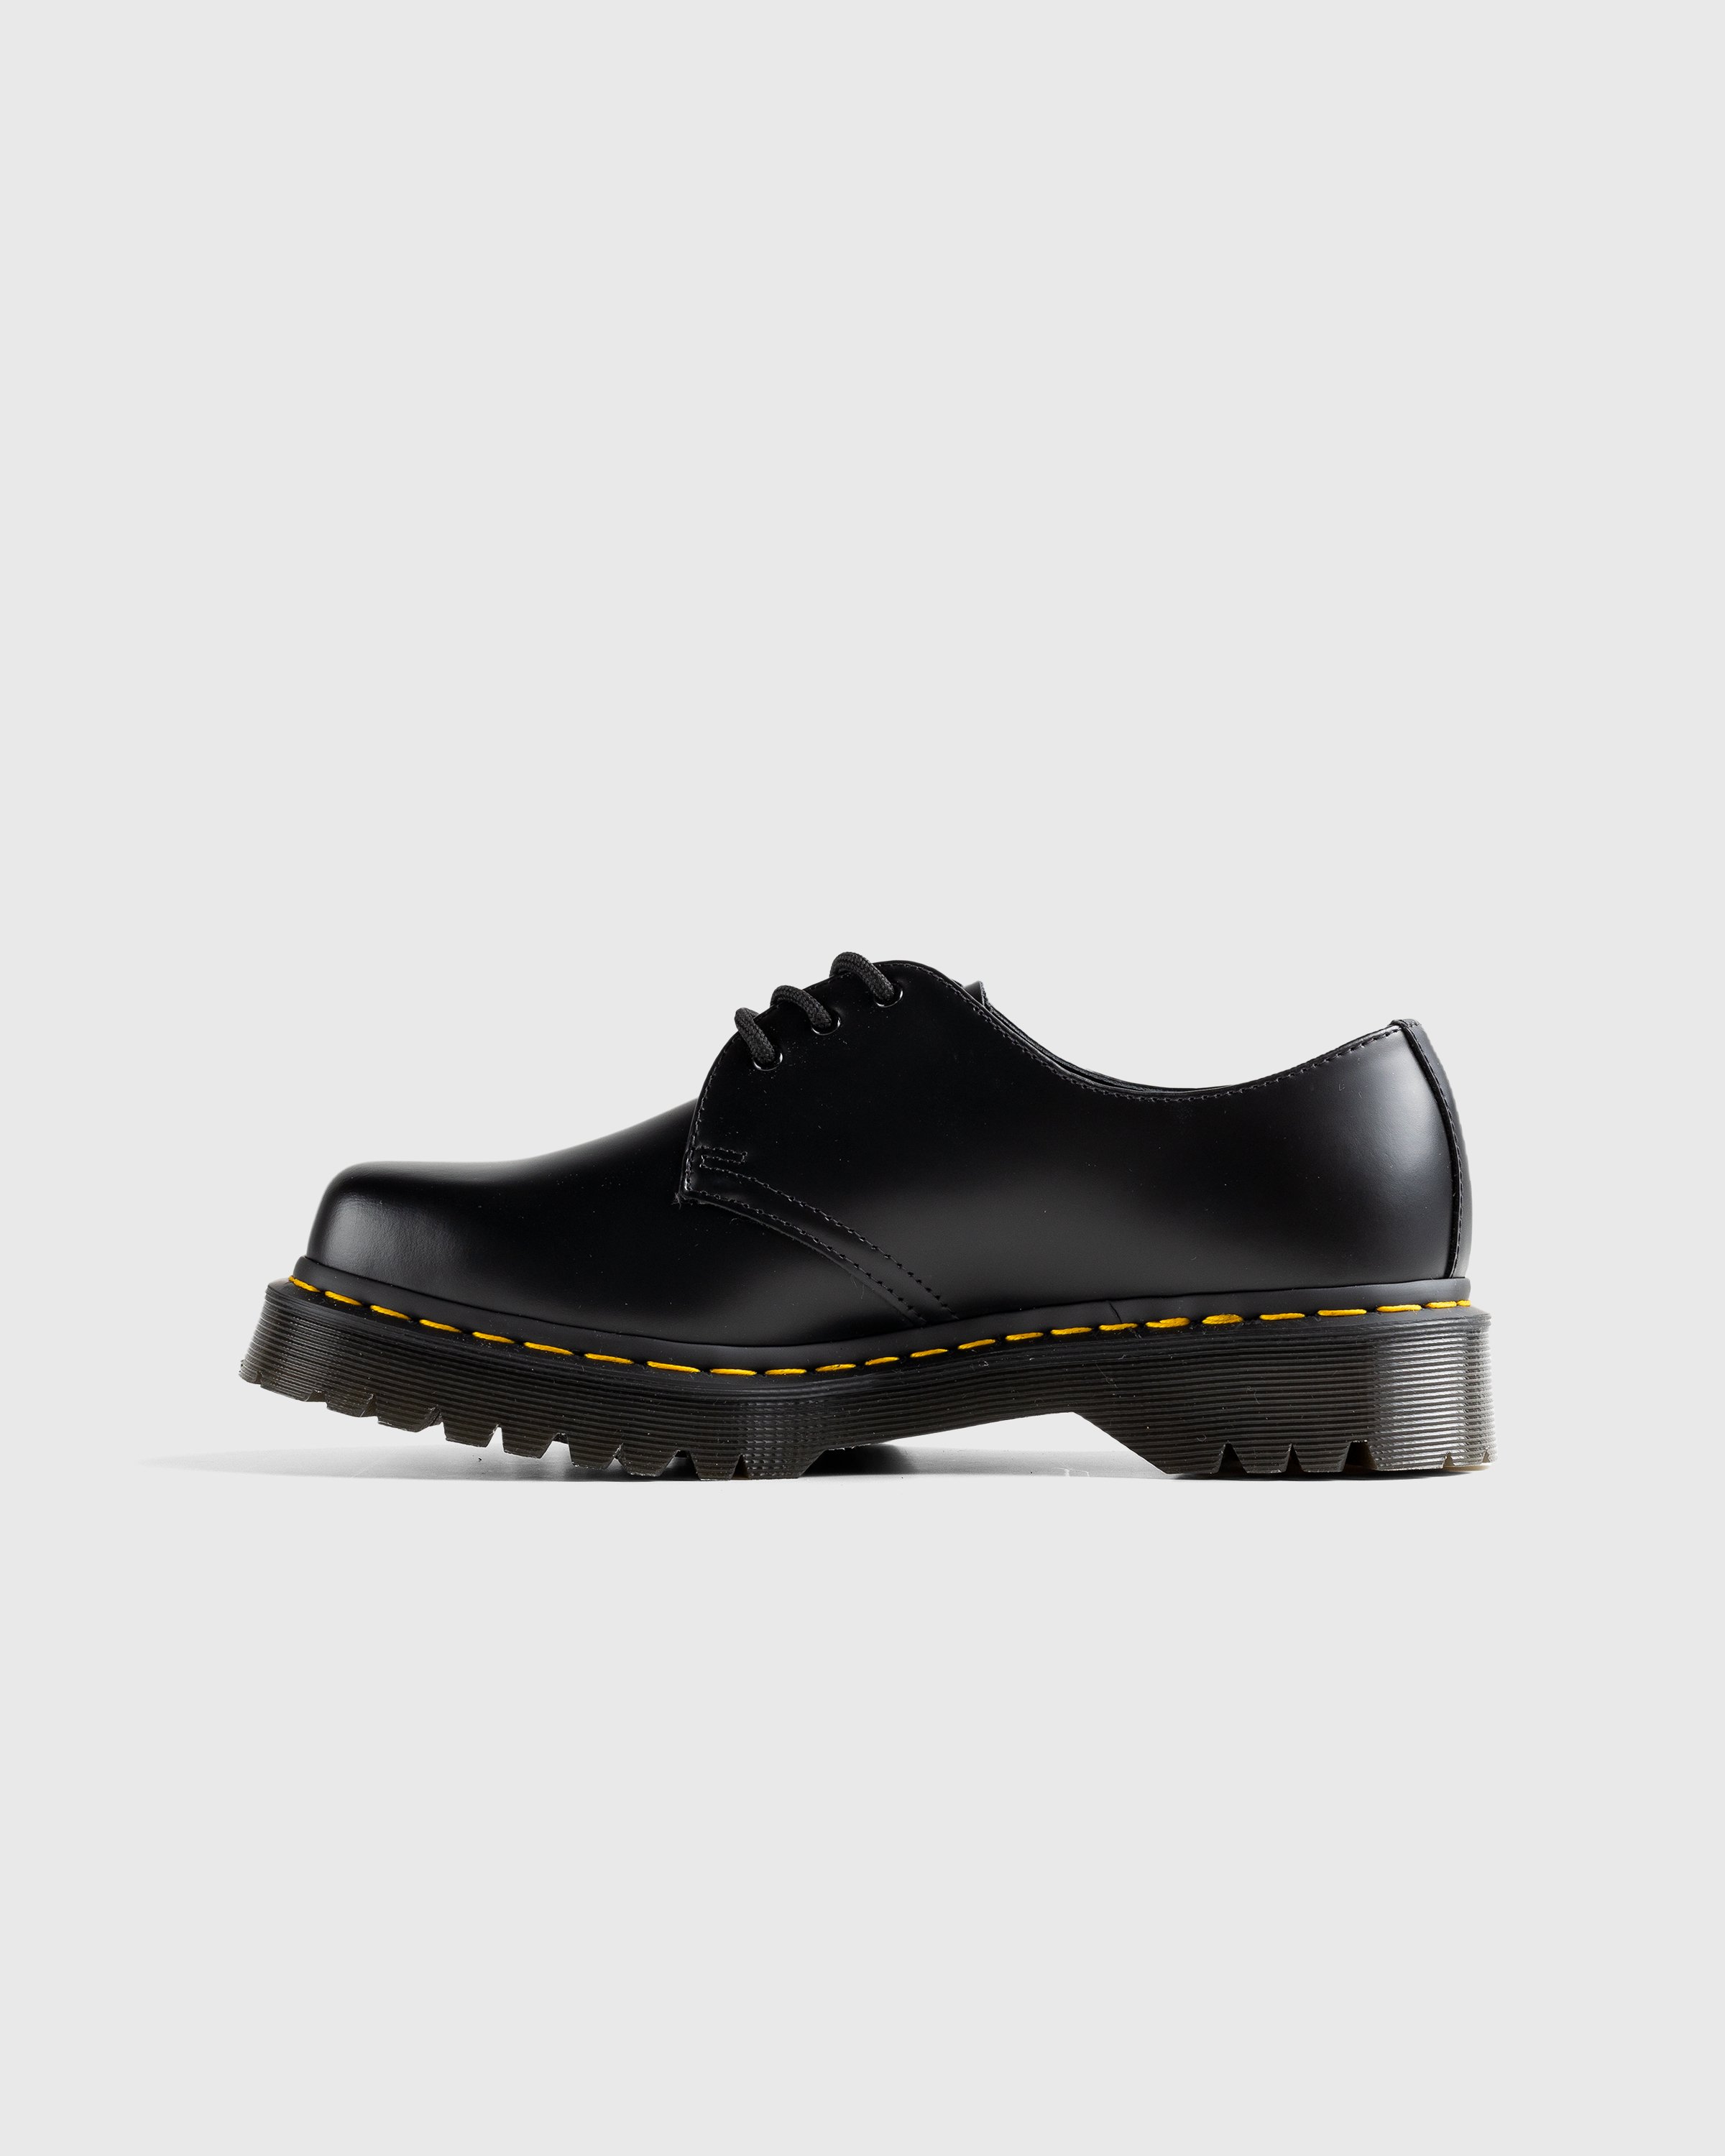 Dr. Martens - 1461 Bex Squared Black Polished Smooth - Footwear - Black - Image 2